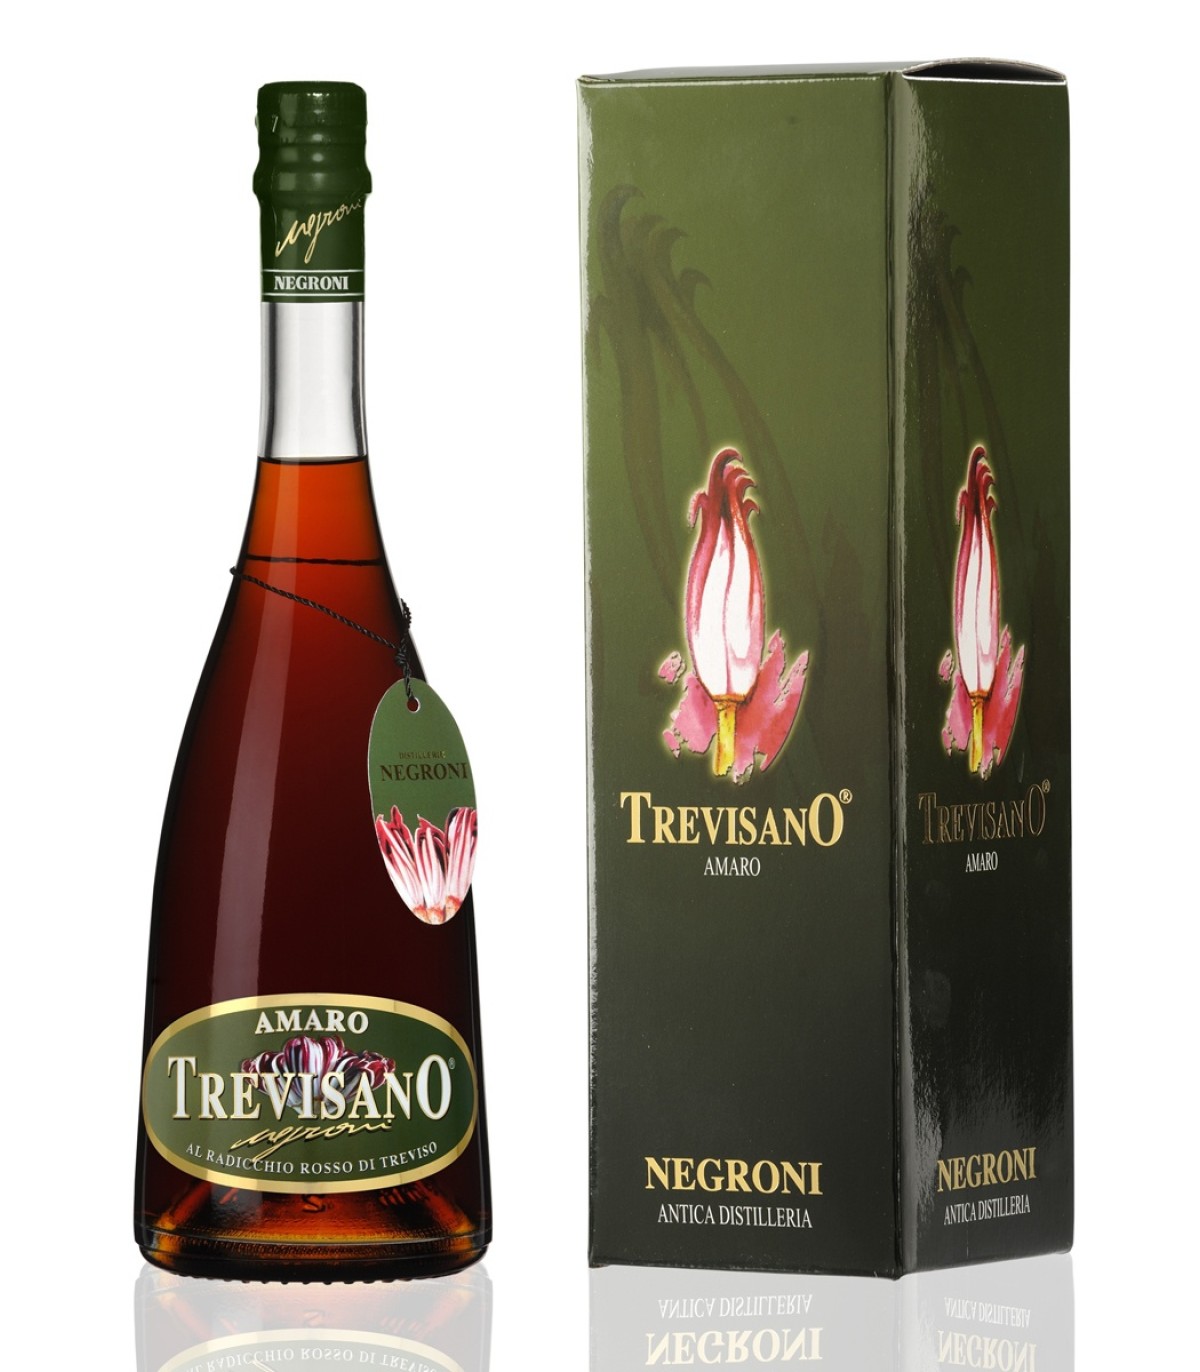 Amaro Trevisano 70cl - Negroni Antica Distilleria